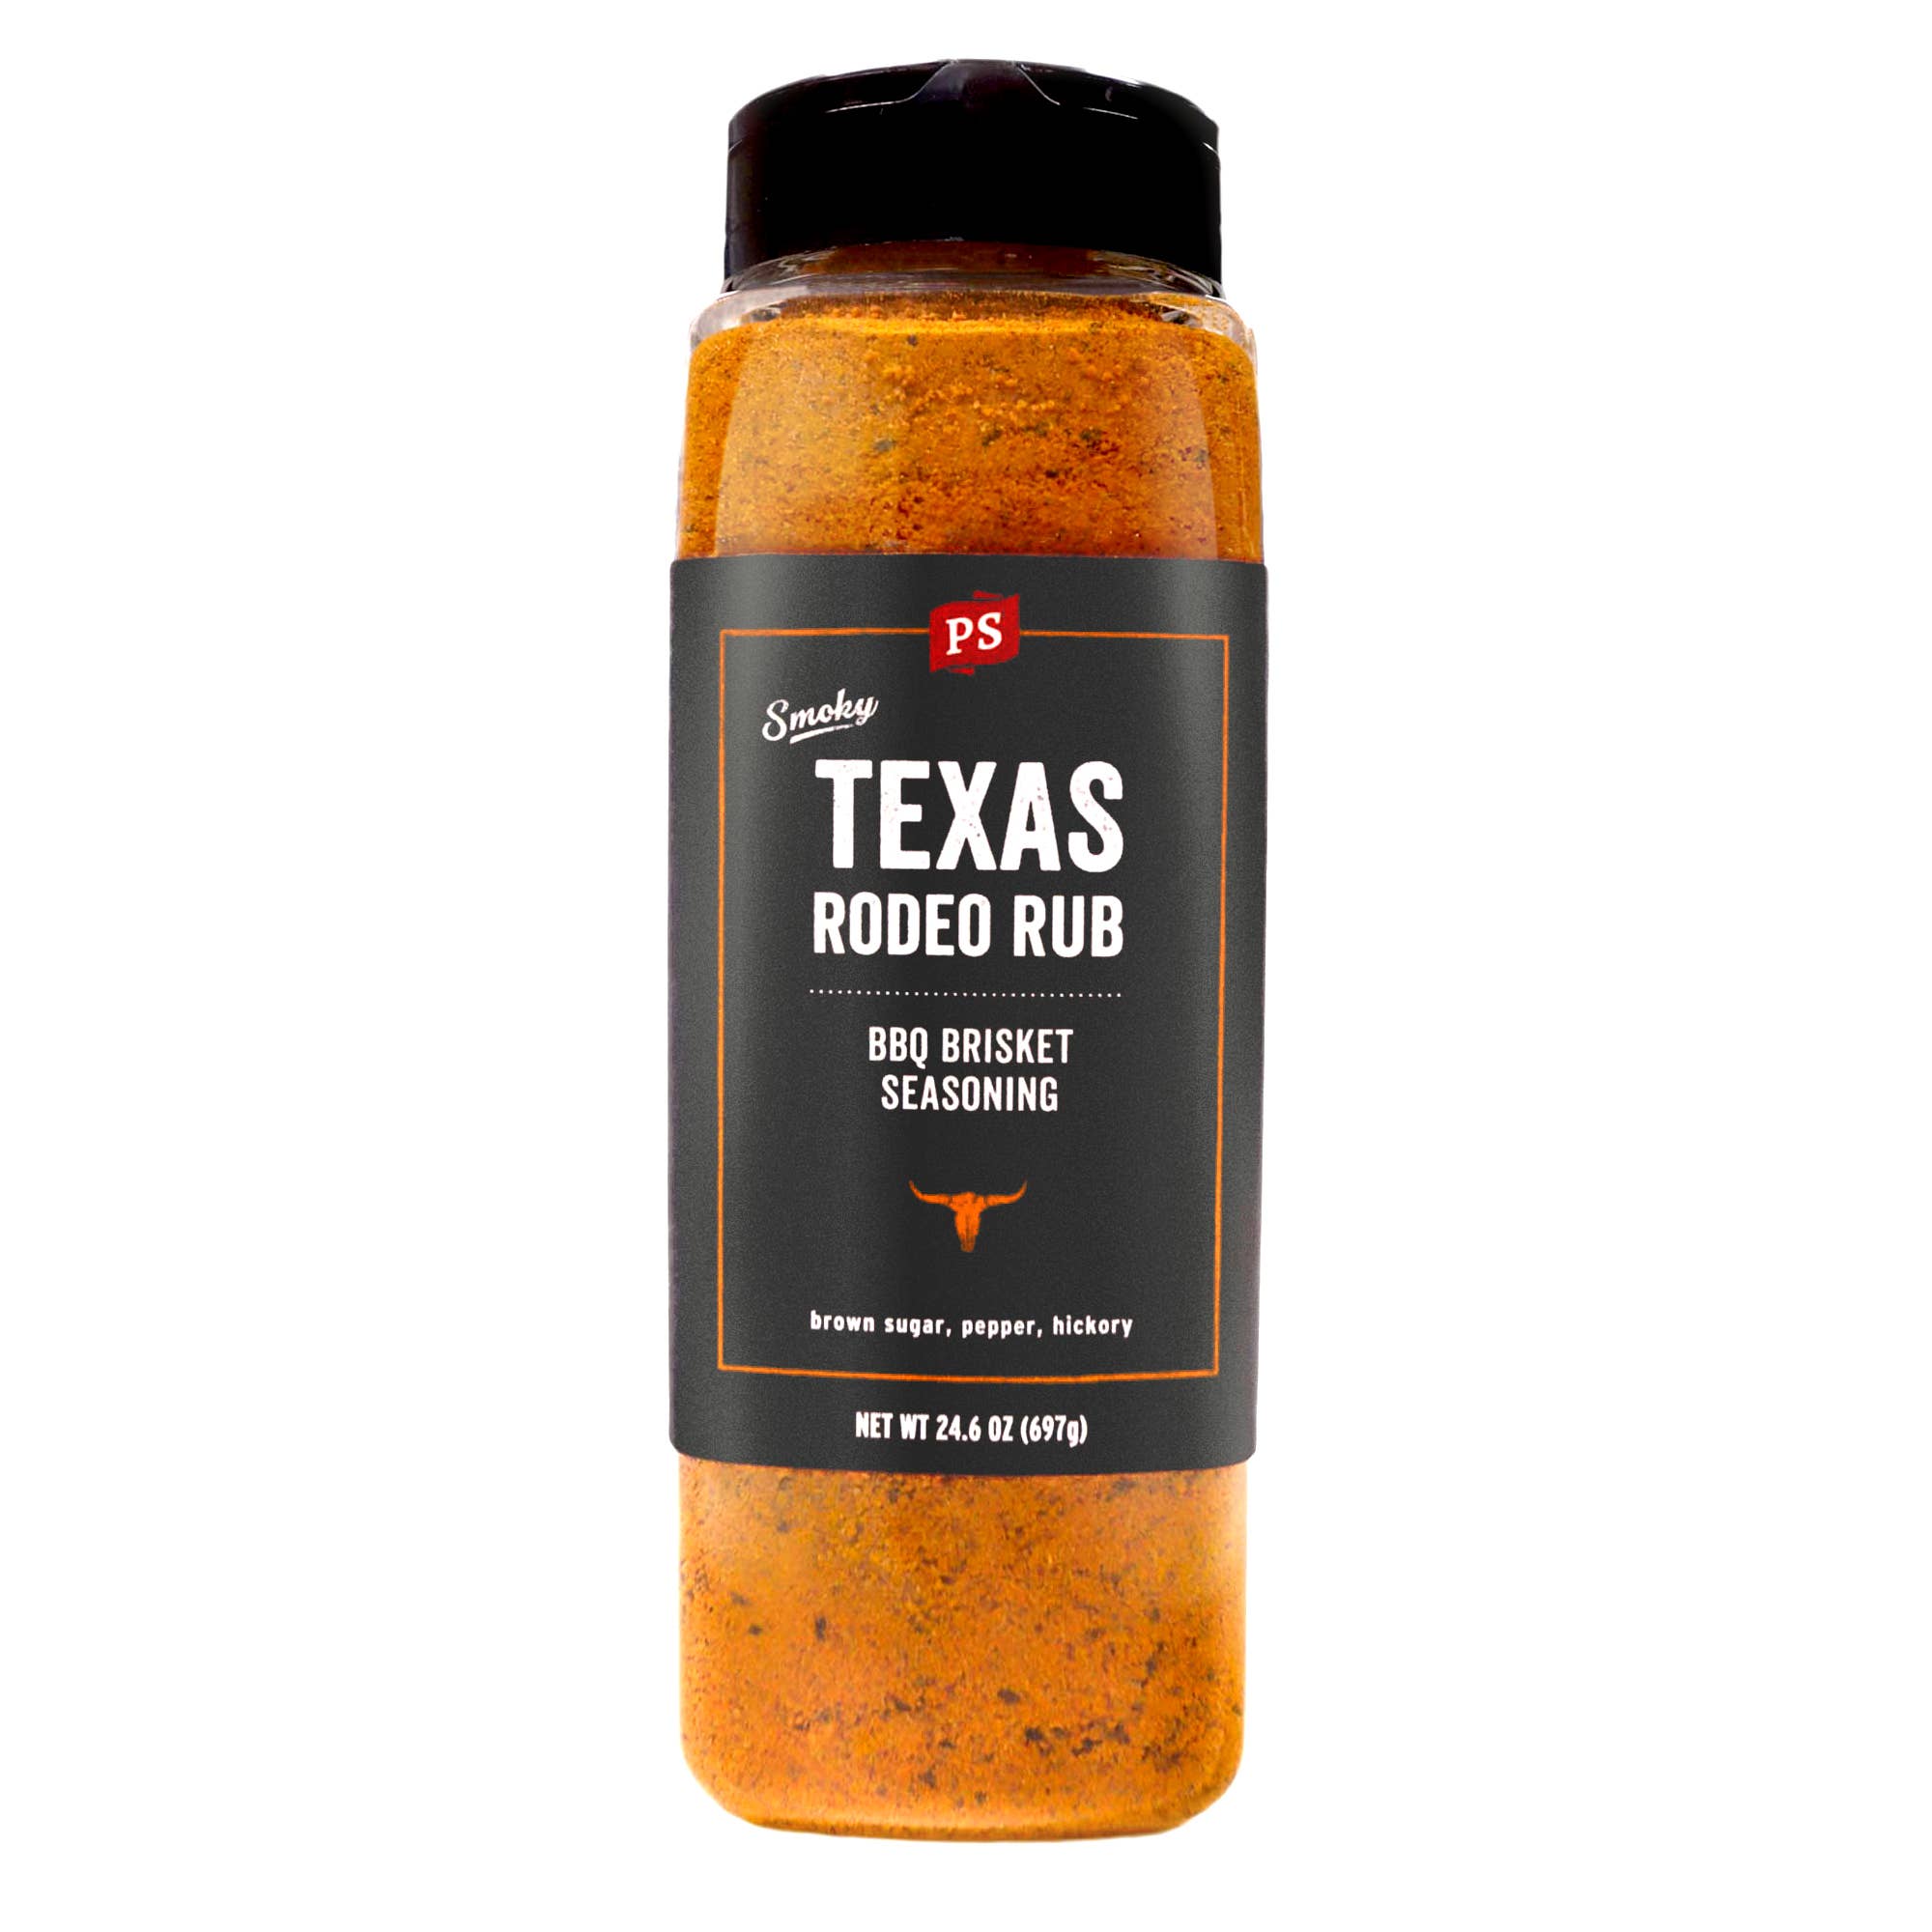 PS Seasoning BBQ Rubs - Rodeo Rub Texas Brisket